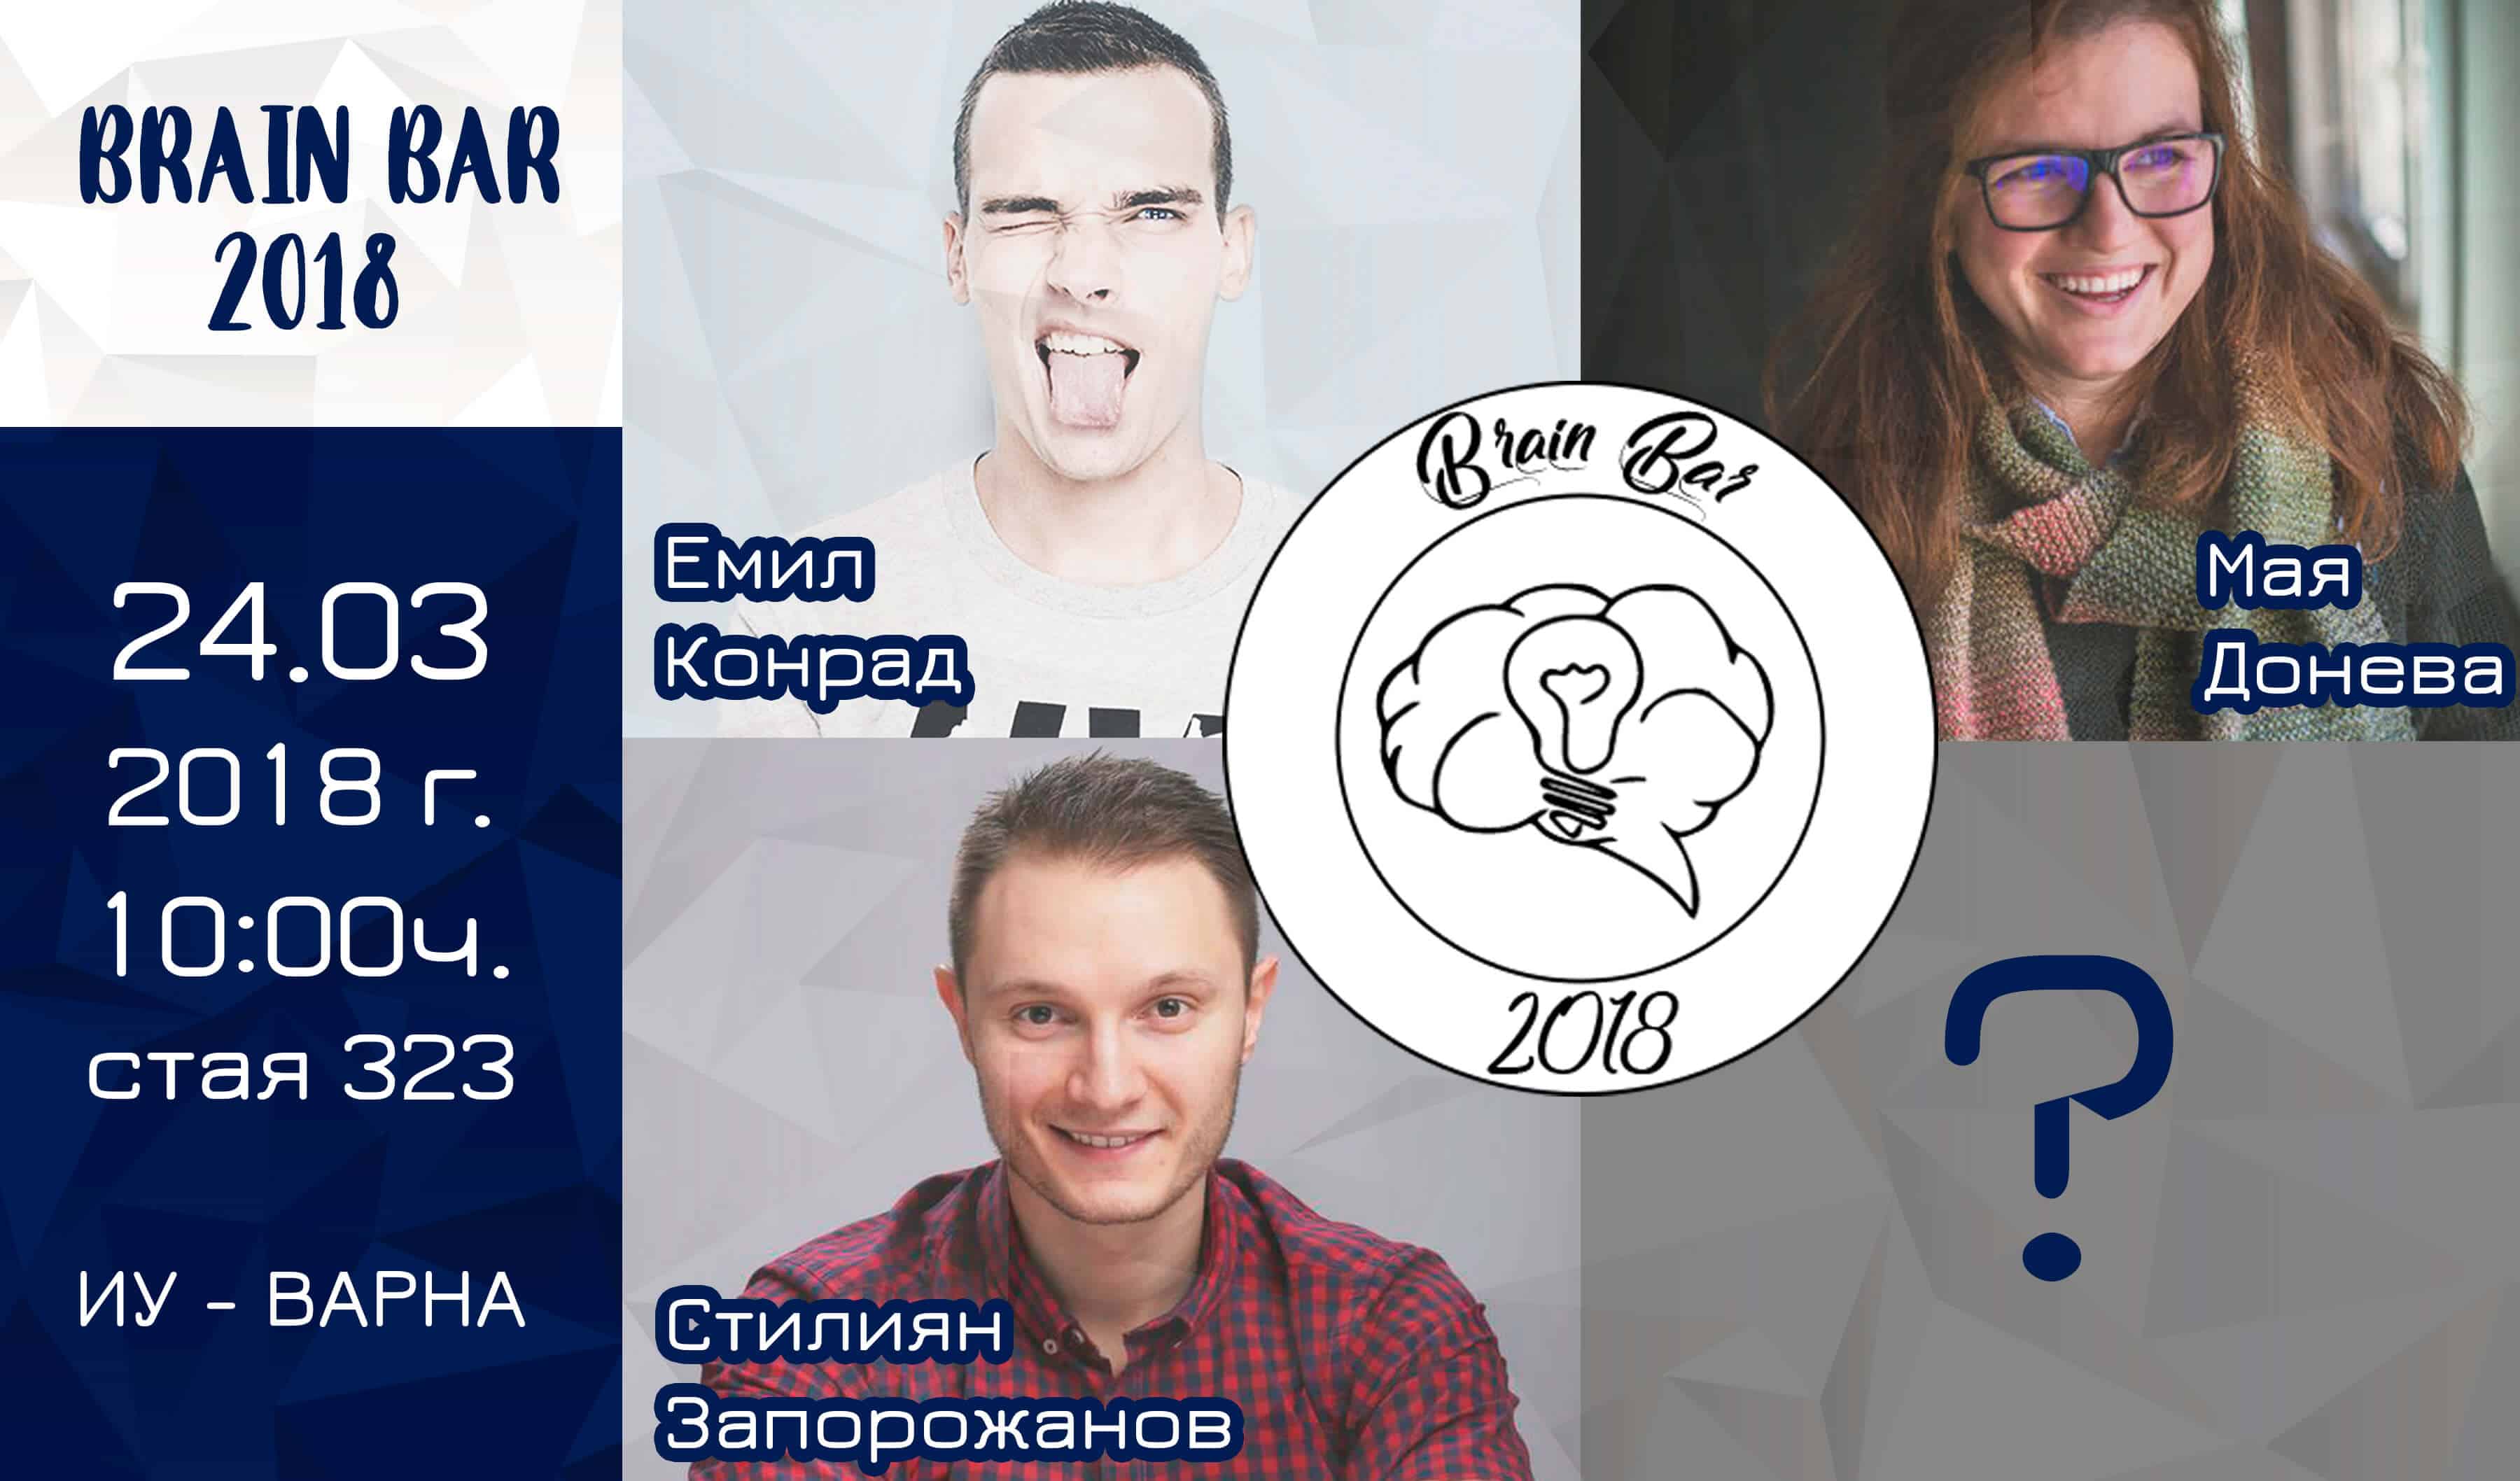 Brain bar 2018 във Варна - едно от безплатните топ събития тази година!